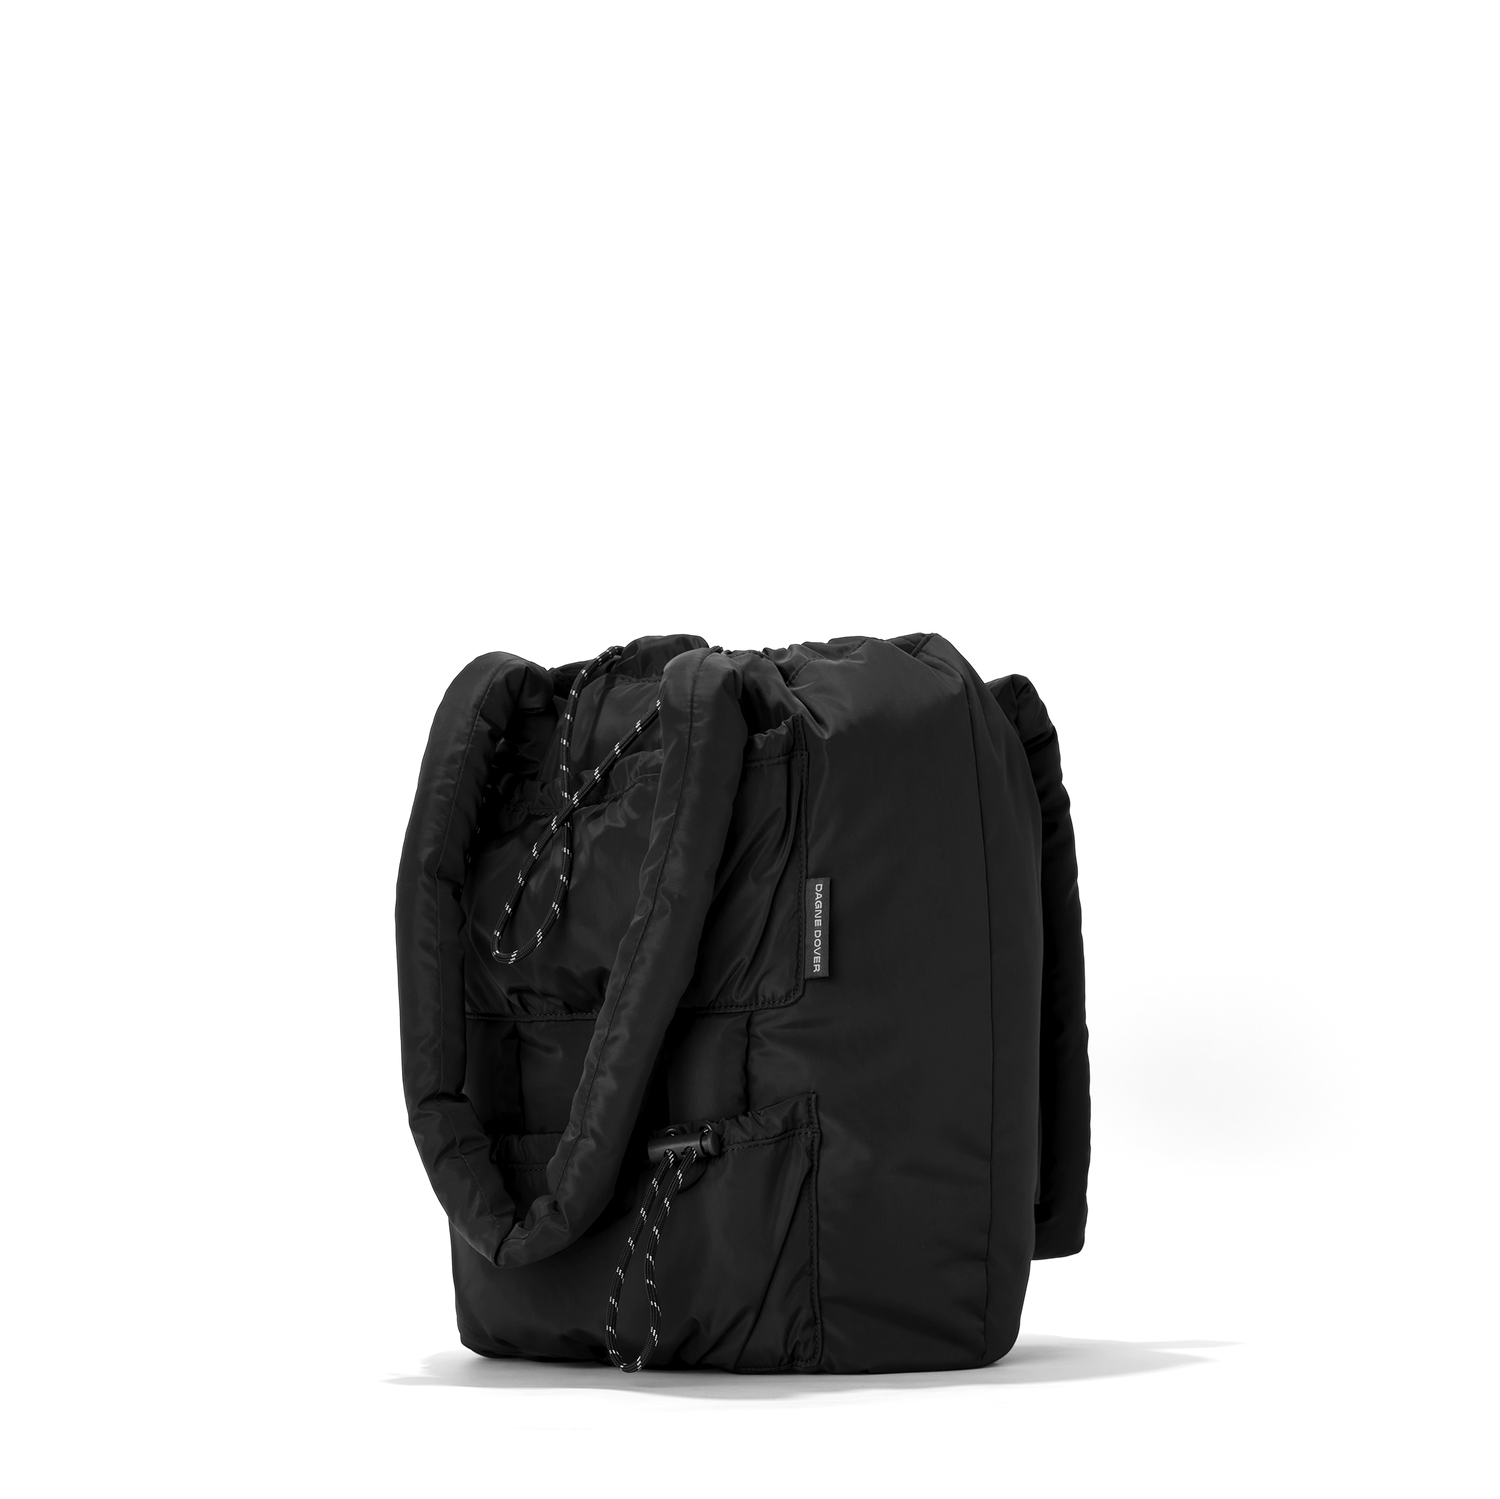 Dagne Dover Indi Diaper Backpack Small, Dark Moss